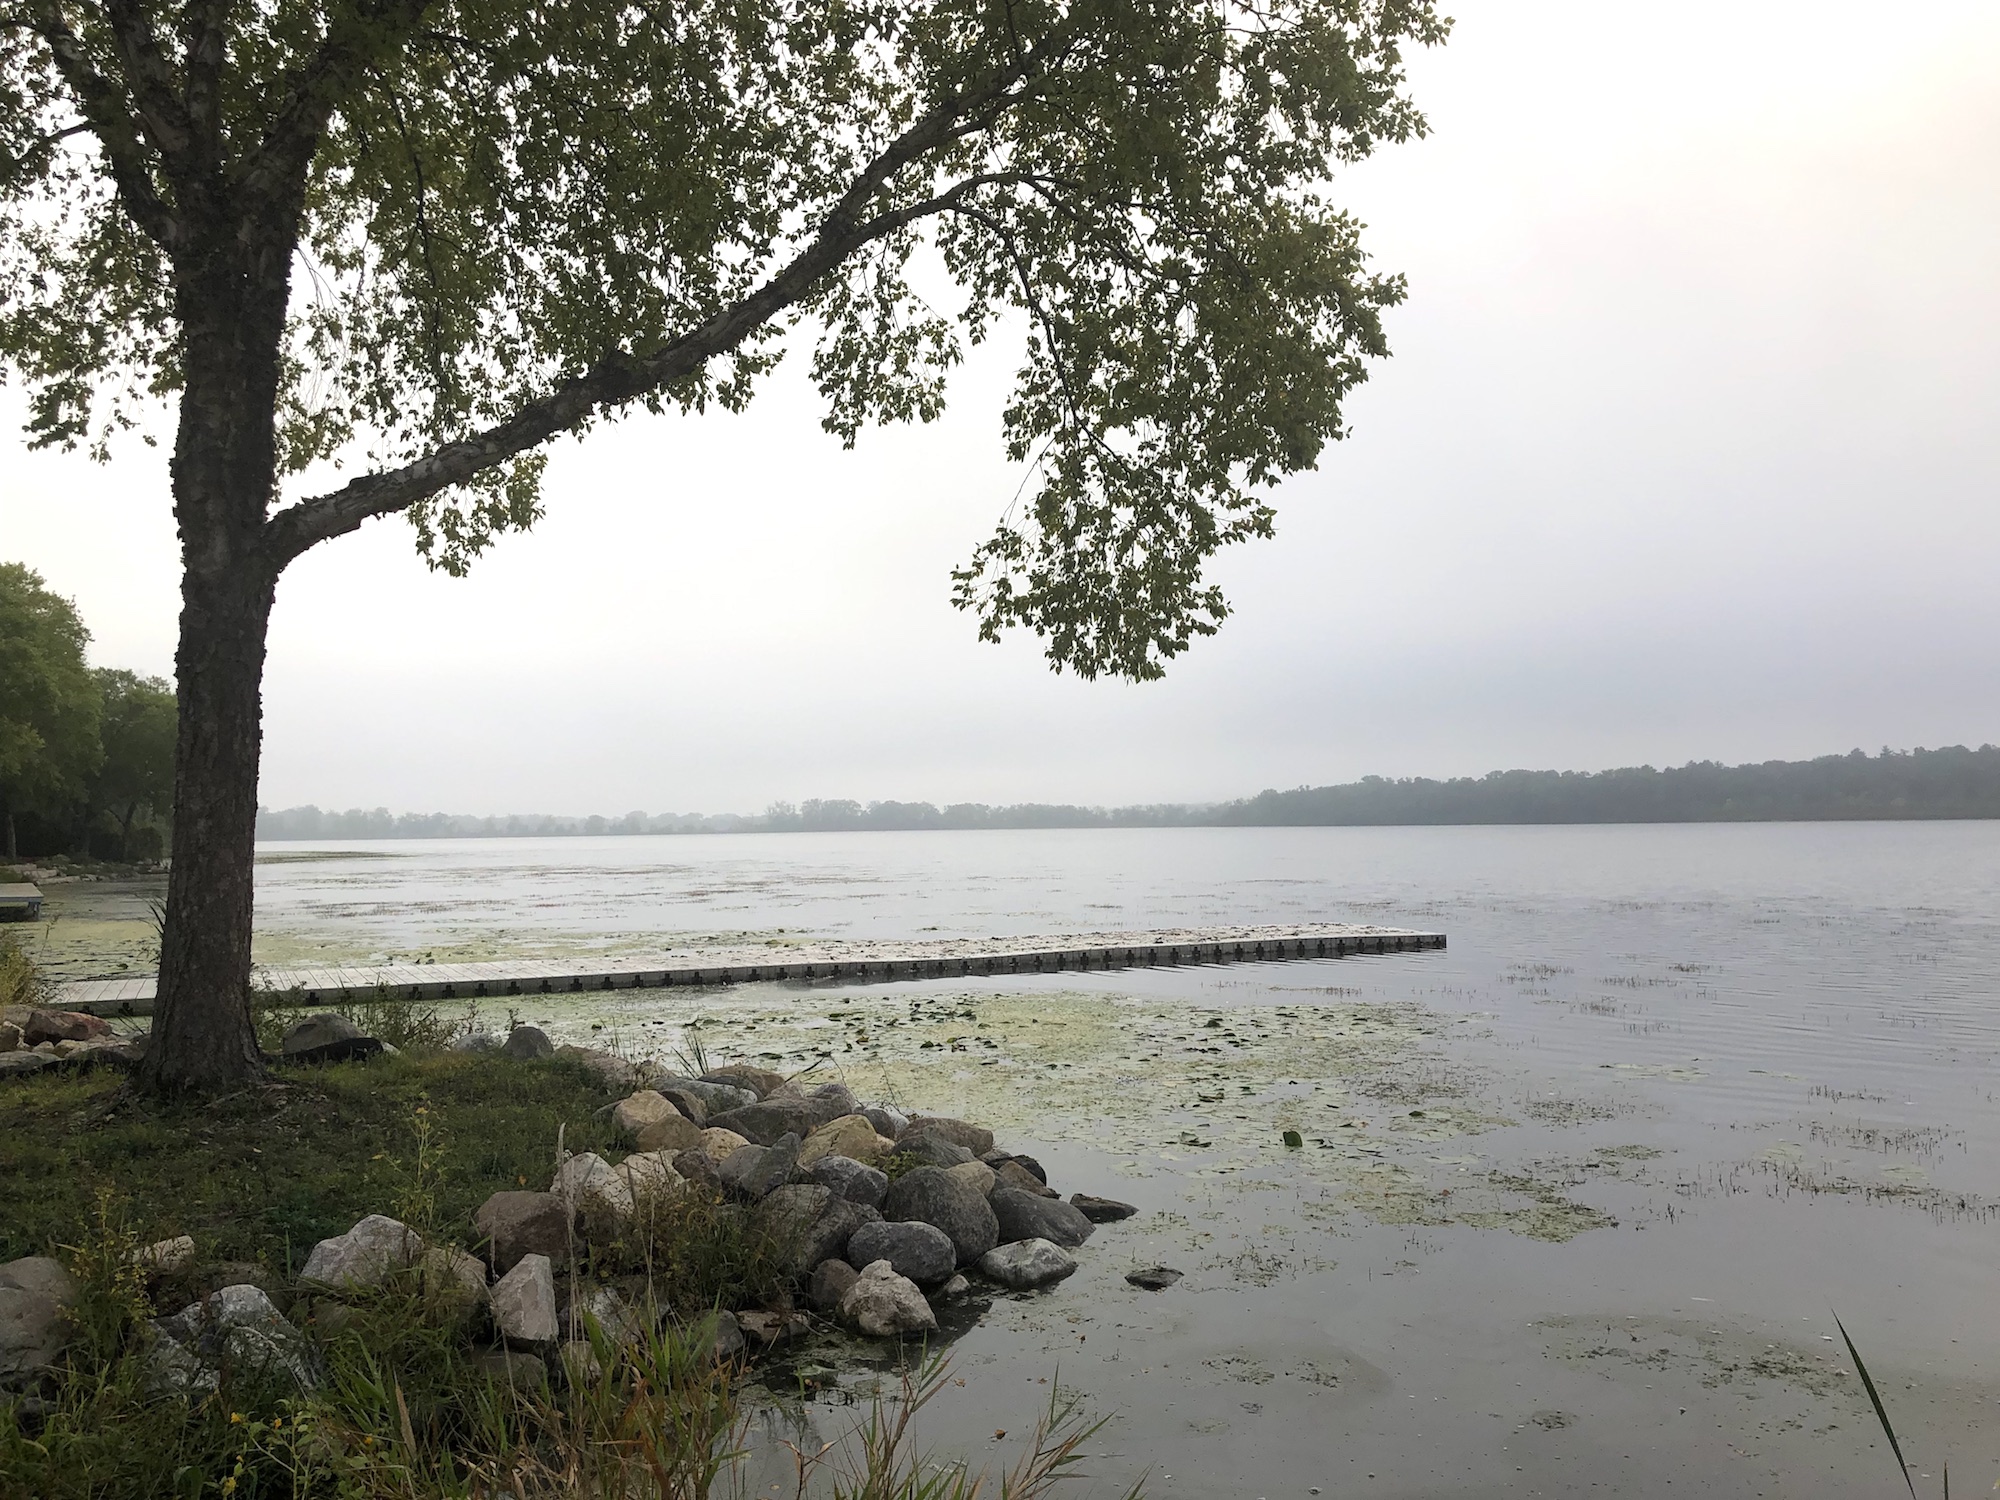 Lake Wingra on September 17, 2019.